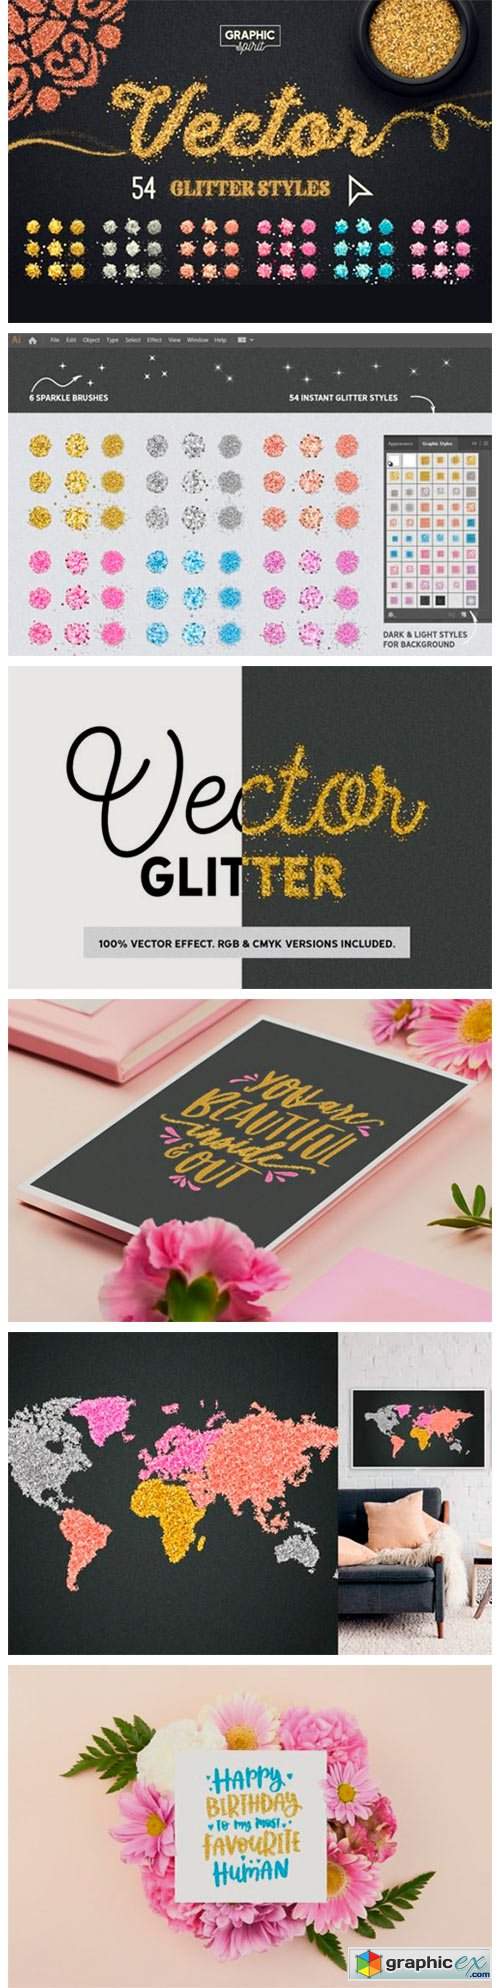  Vector Glitter for Adobe Illustrator 